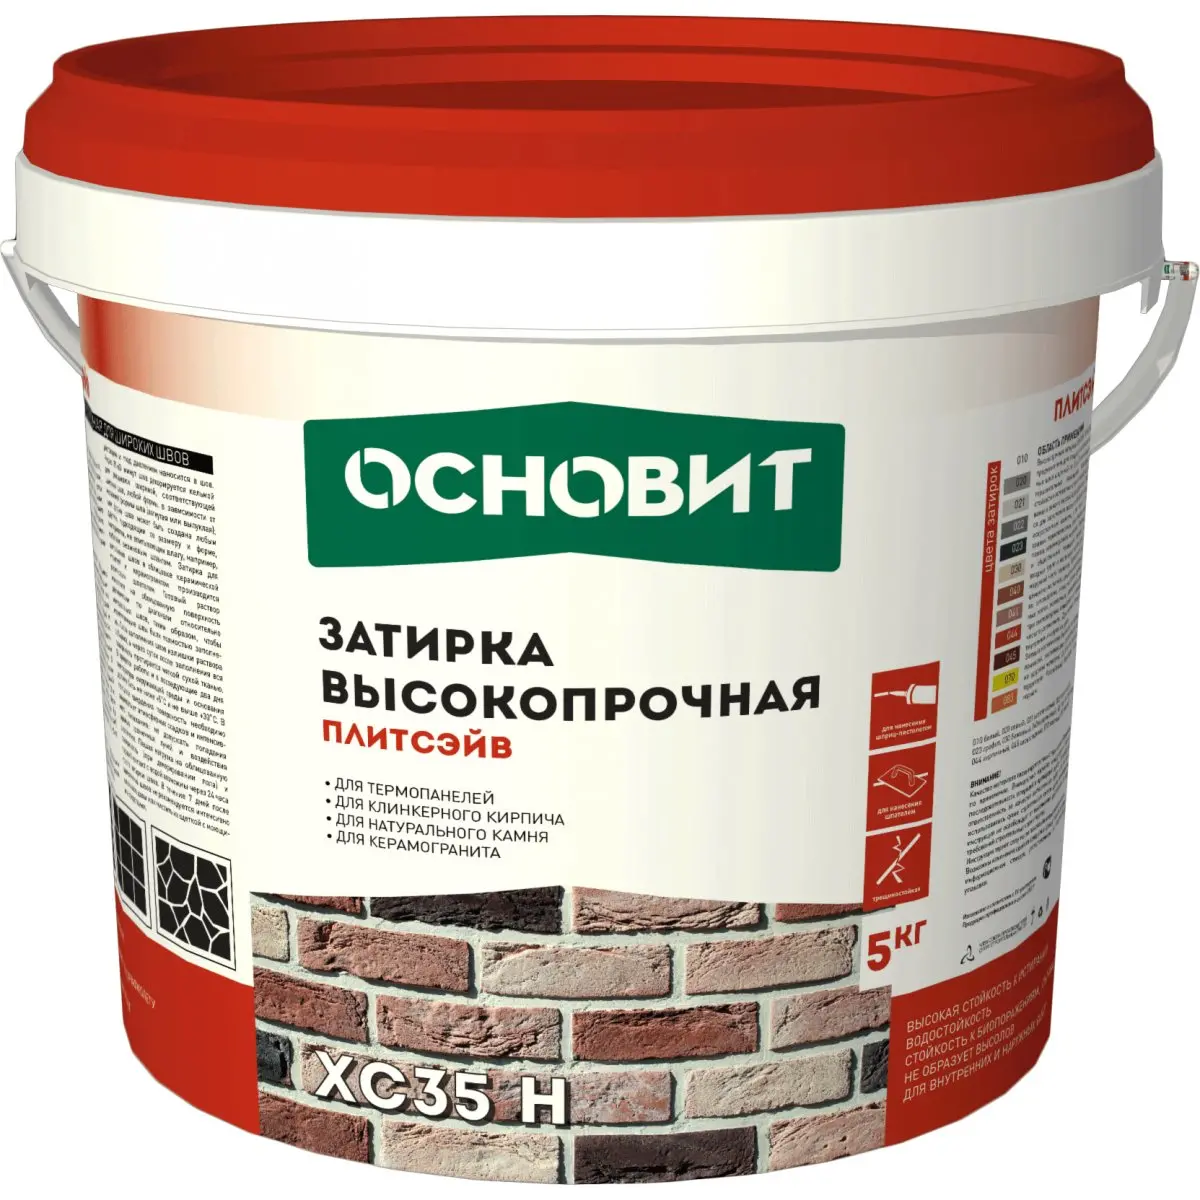 Затирка цементная Основит ПЛИТСЭЙВ XC35 H 020 серый 5 кг